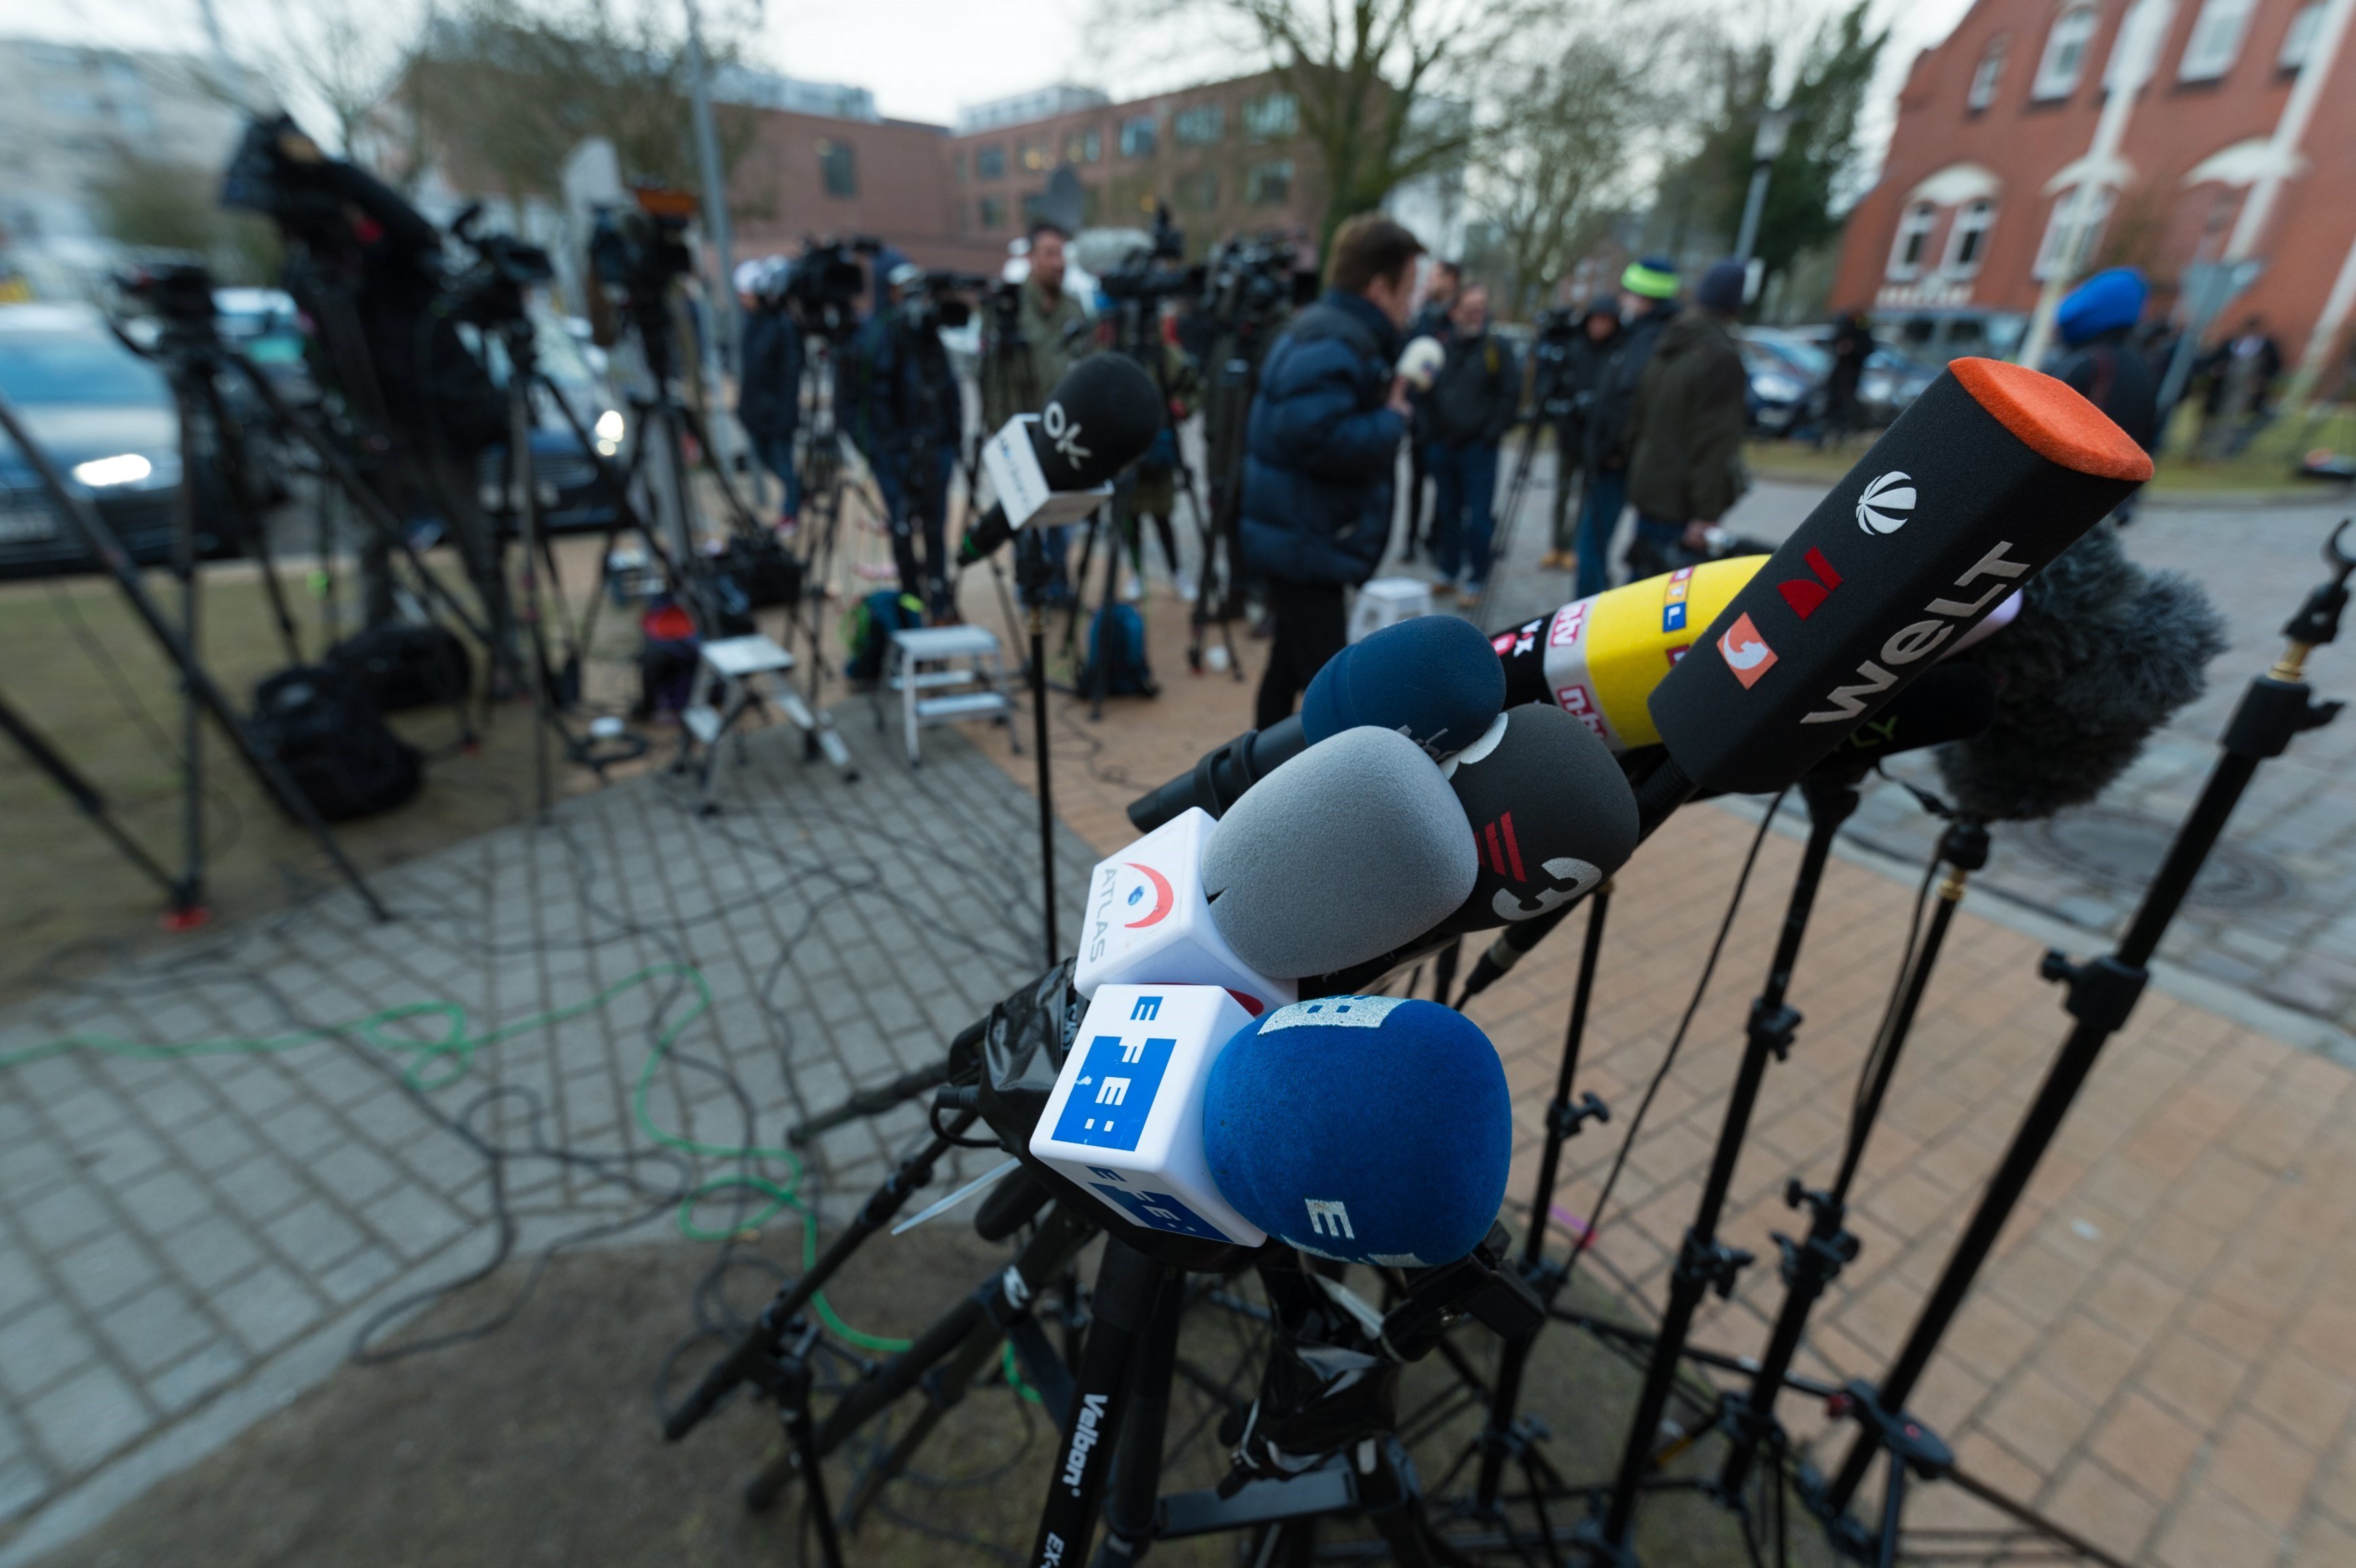 Micrófonos de diferentes agencias y medios de comunicación preparados frente a la cárcel de Neumünster (norte de Alemania) a la espera de la salida de prisión del expresidente de la Generalitat de Cataluña Carles Puigdemont, este 6 de abril.